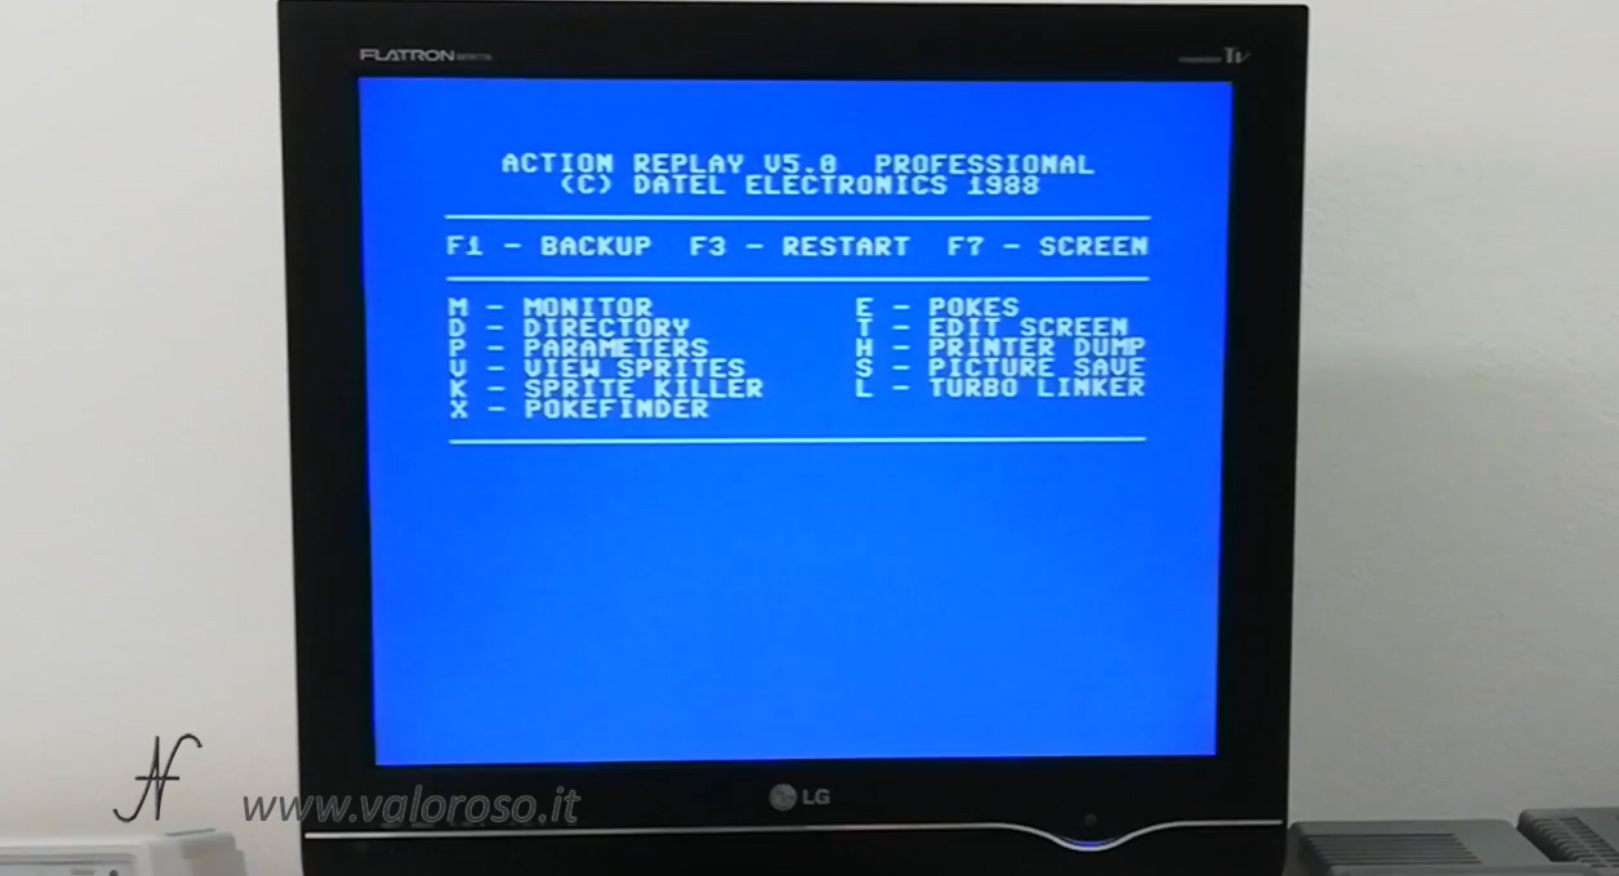 Datel Action Replay, Commodore 64, menu backup restart, copia videogioco da cassetta a floppy e SD